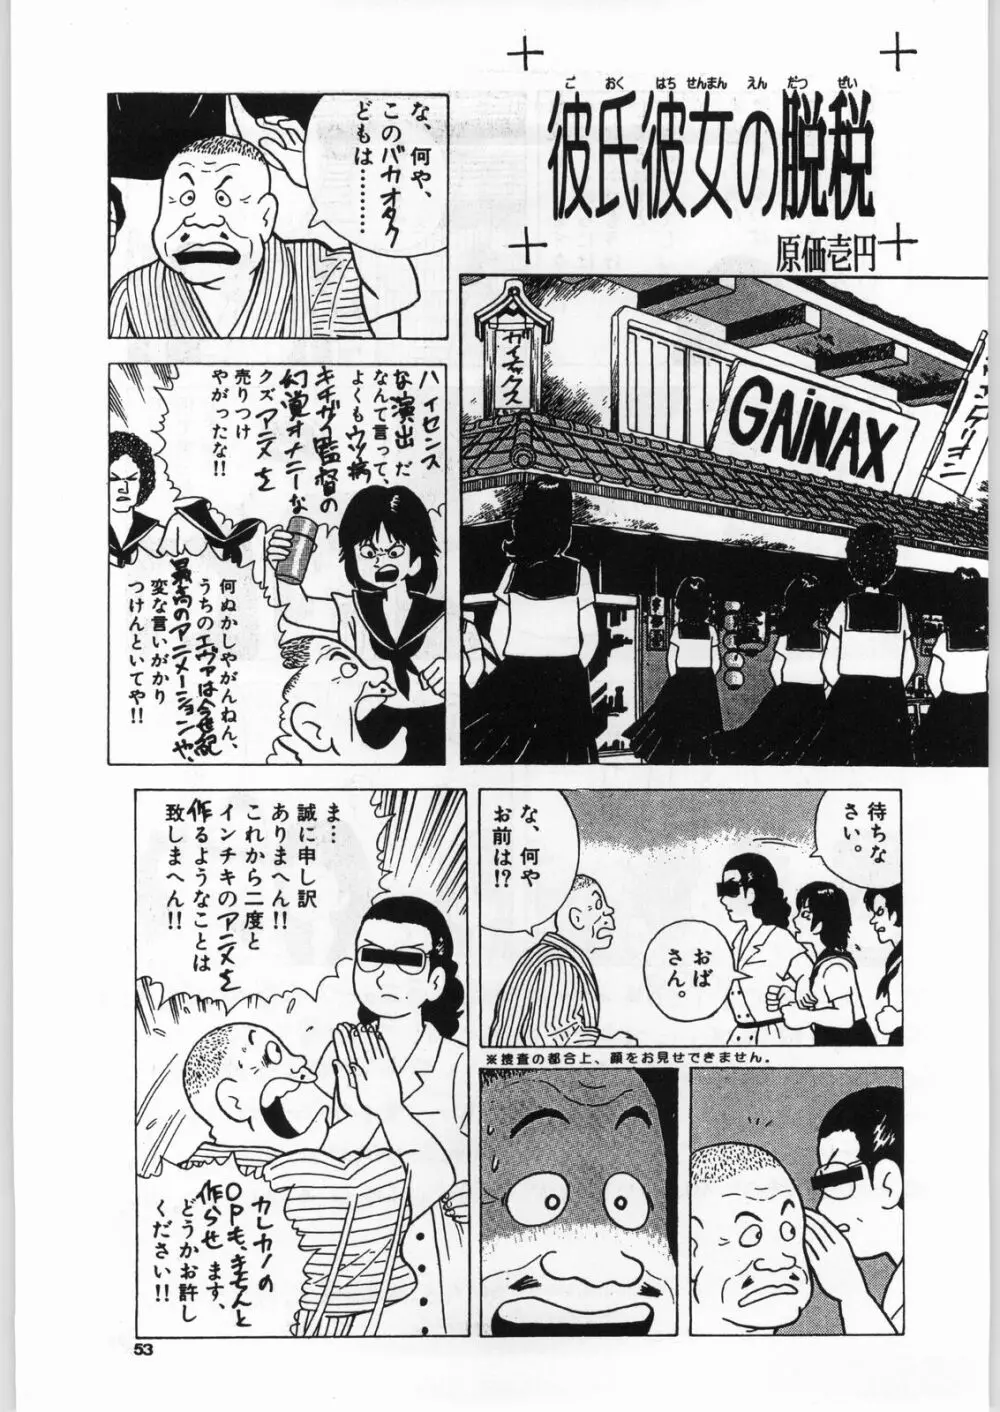 98輝け! ヘッポコアニメ チンプレー好プレー - page52